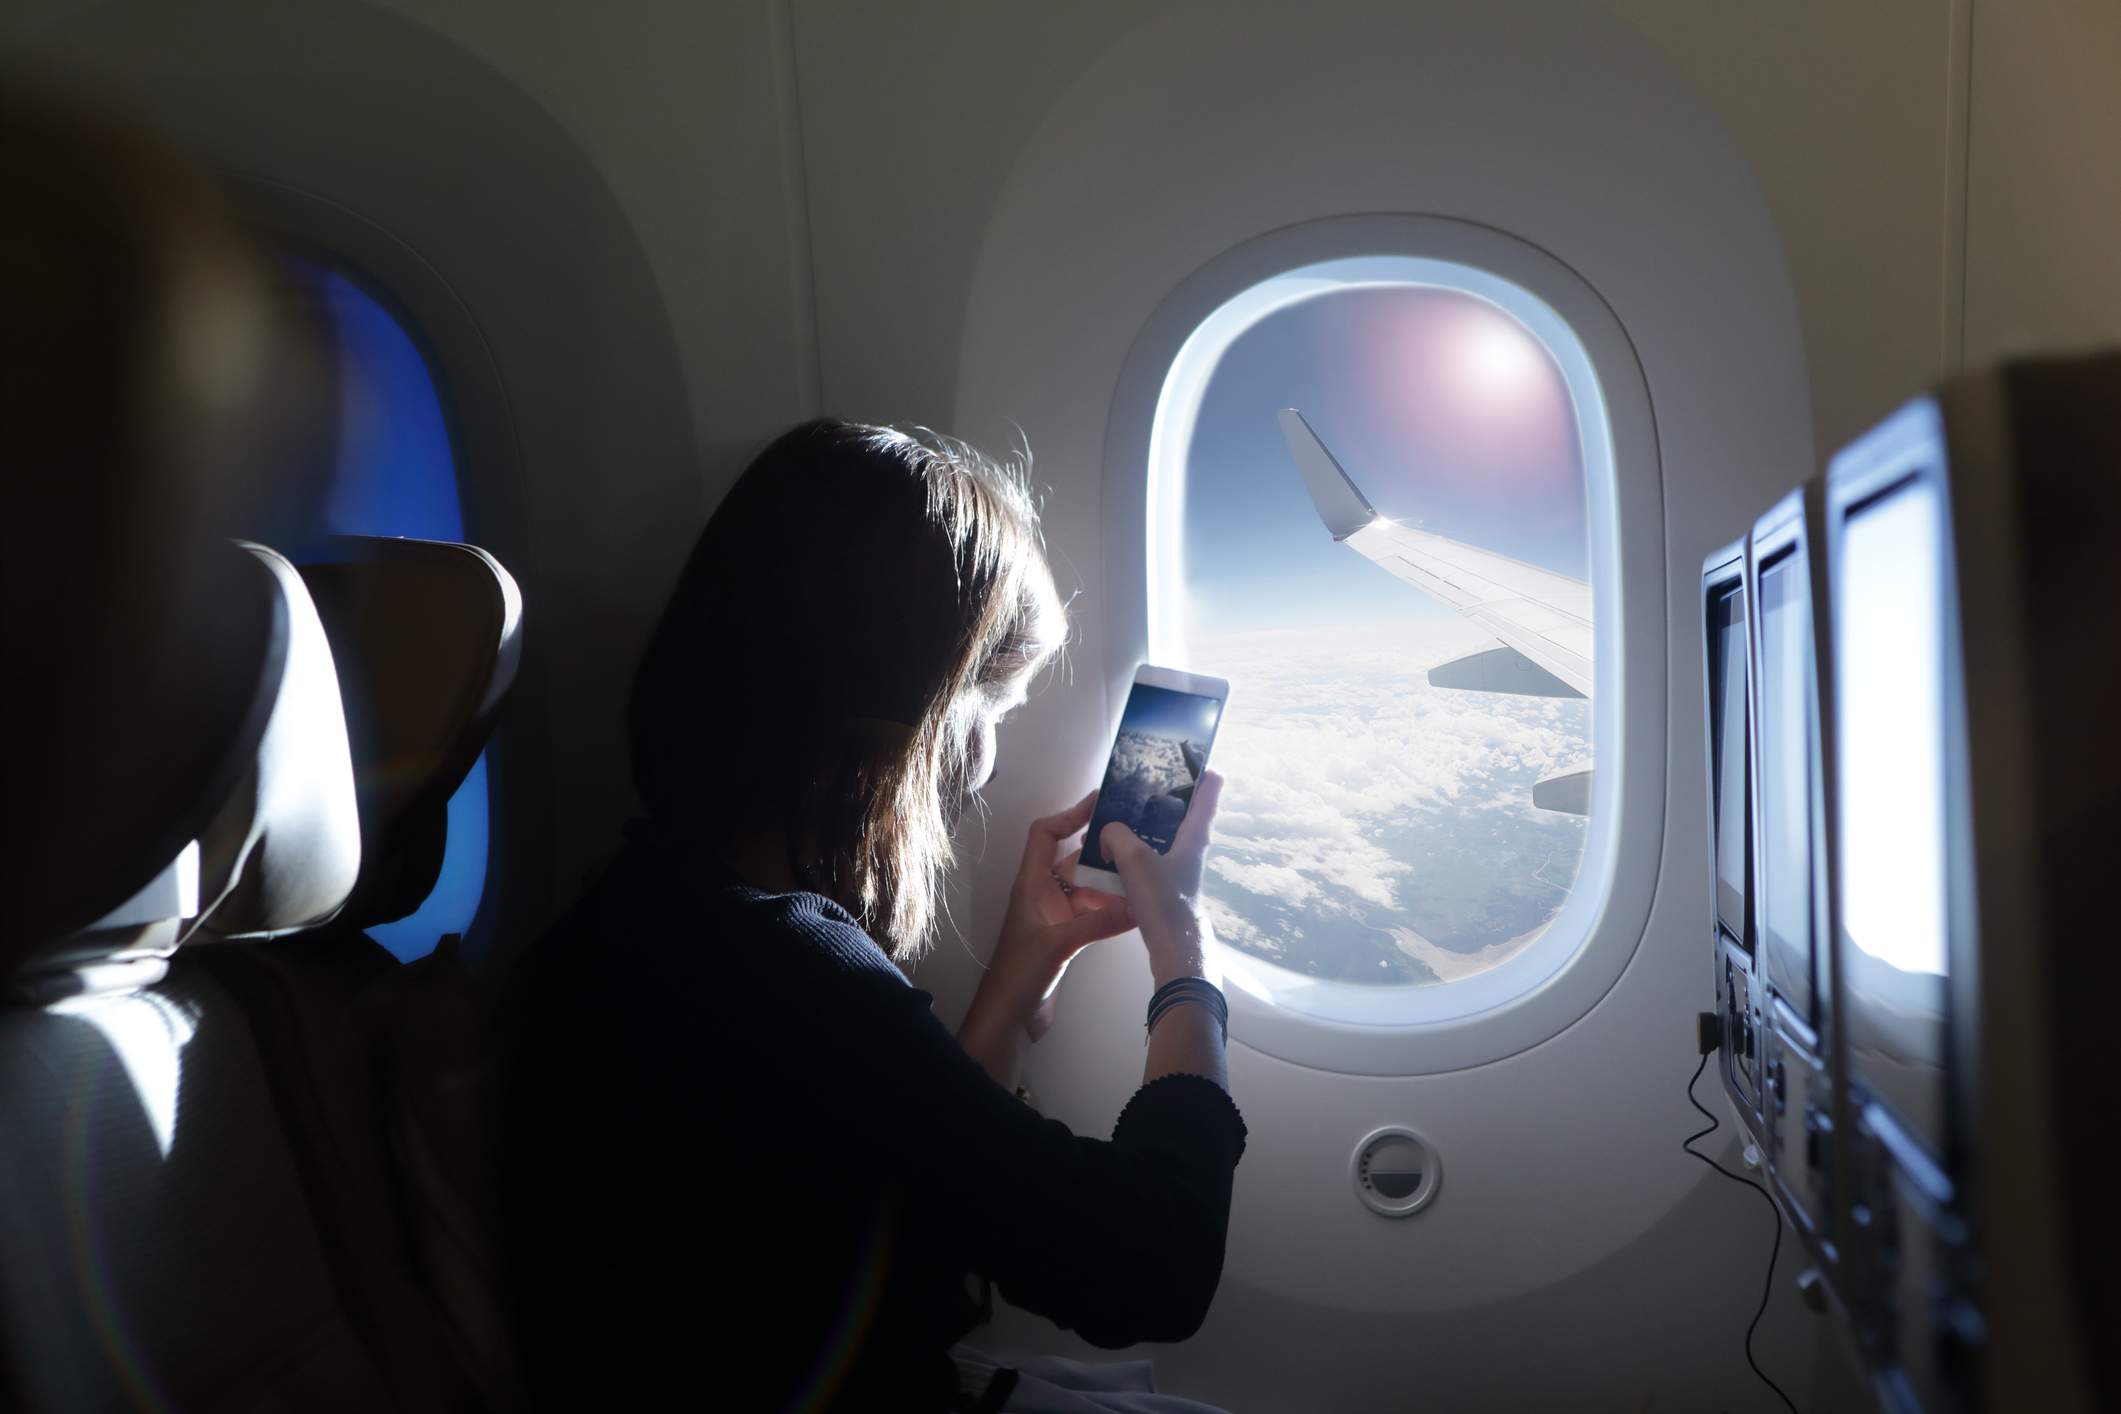 Subir de nivel es hacer fotos no solo fuera, sino también dentro del avión